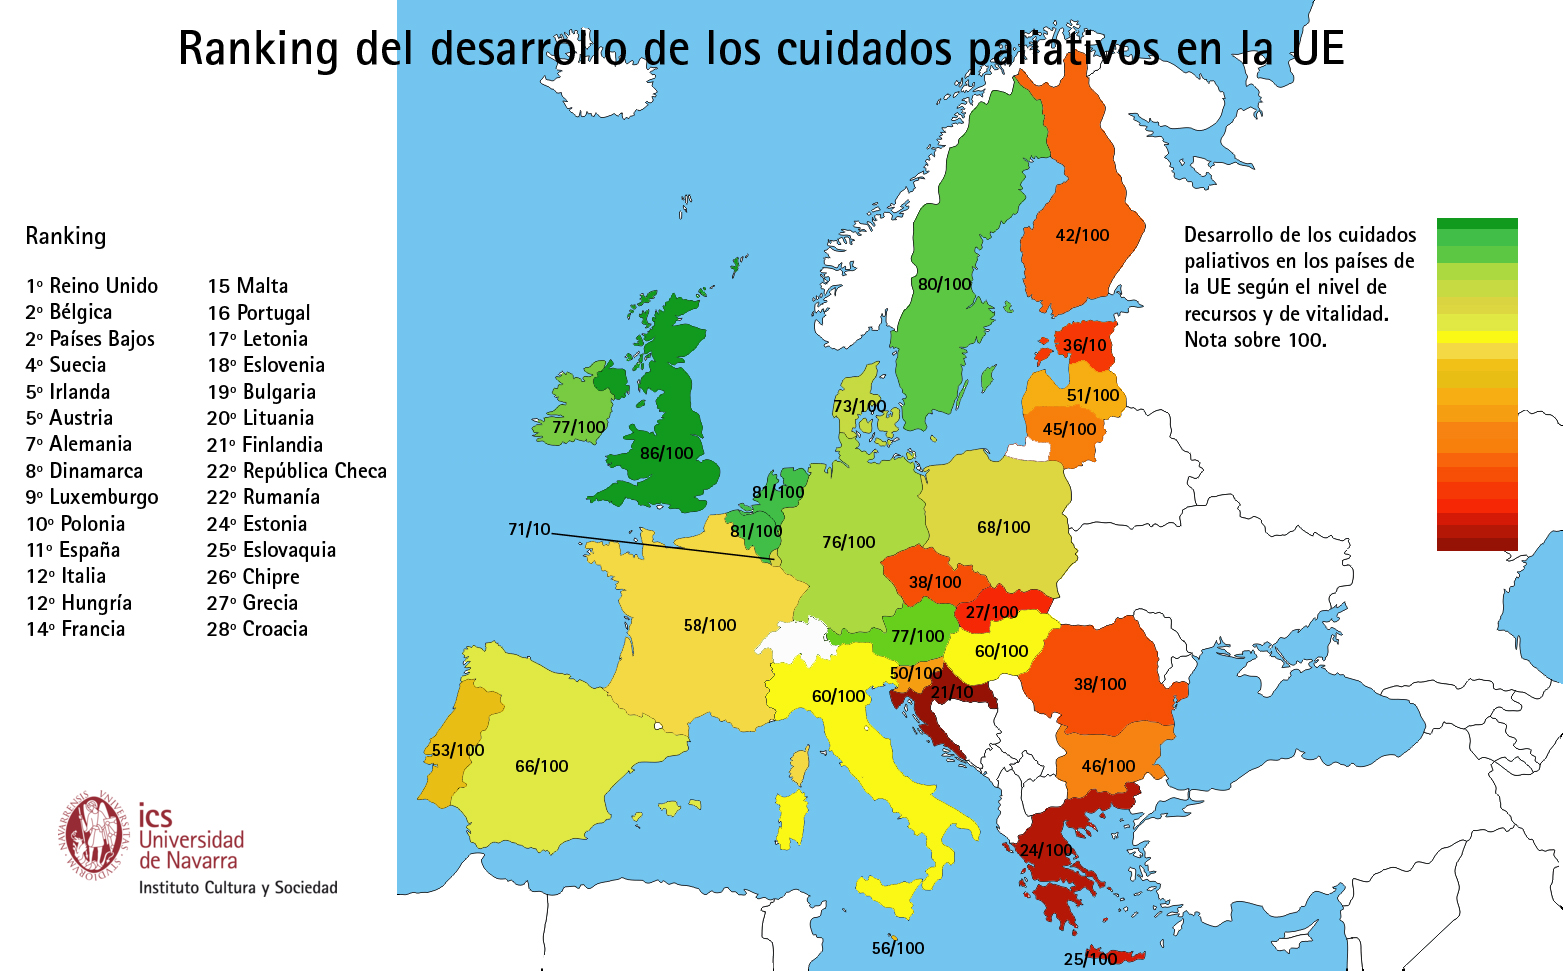 Reino Unido, Bélgica y Países Bajos, los más desarrollados de la UE en cuidados paliativos. España baja del 5º puesto (2007) al 11º